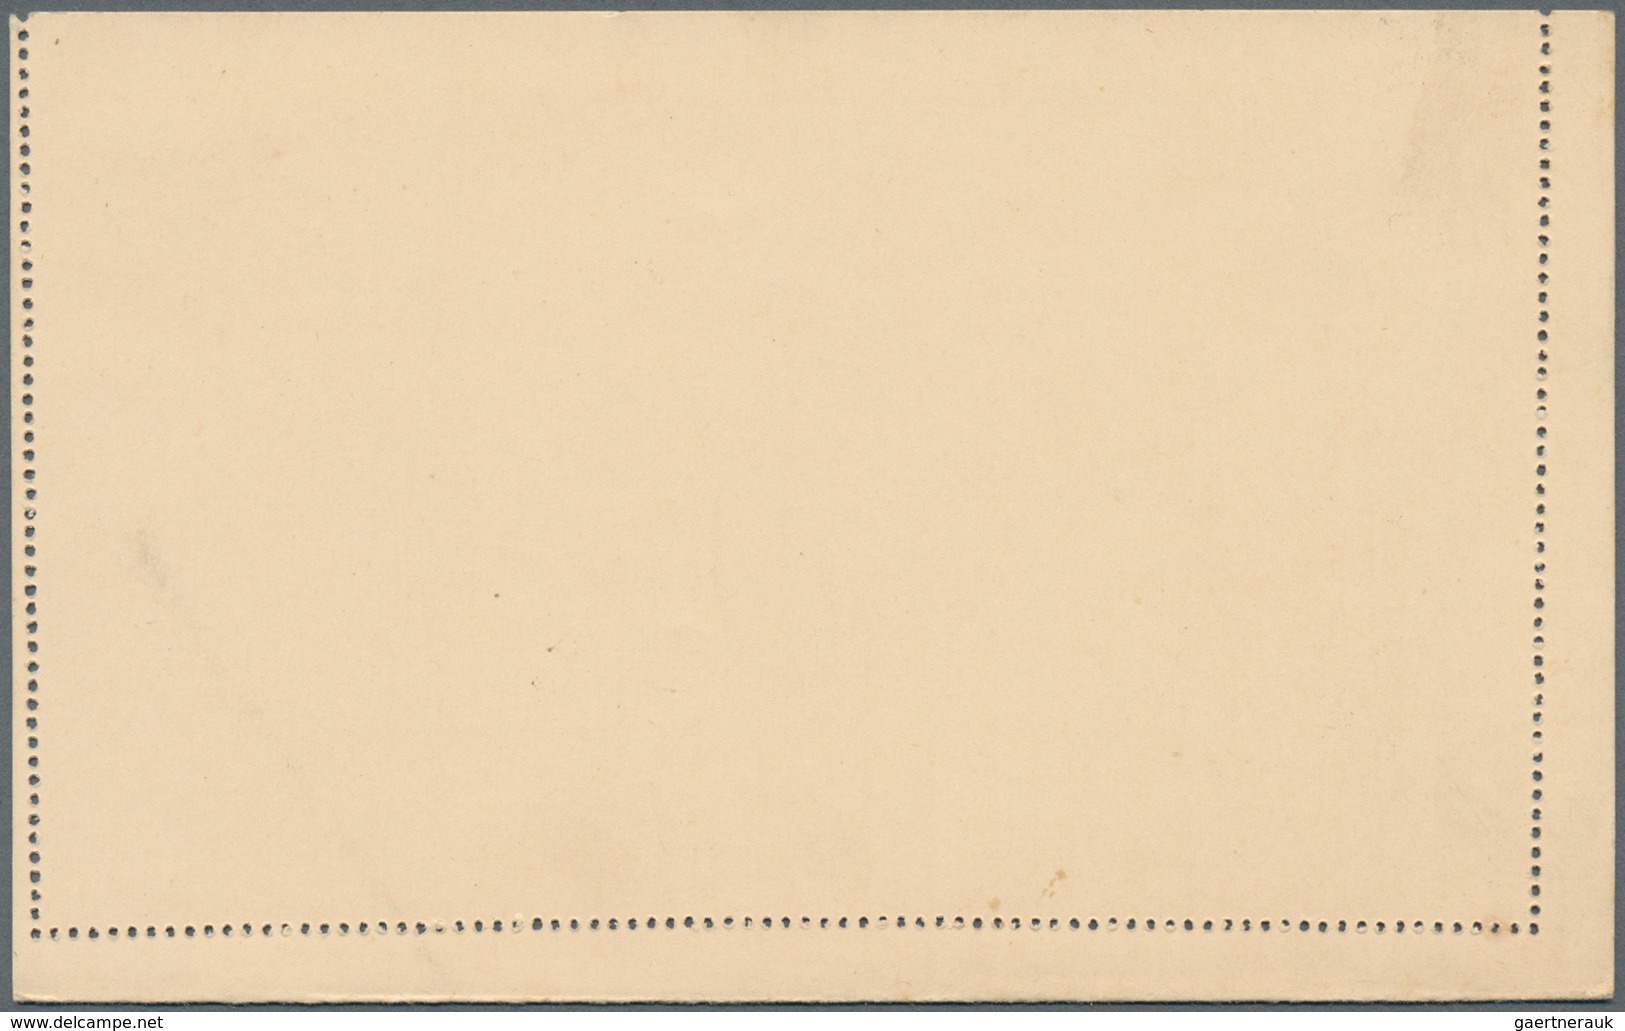 Argentinien - Ganzsachen: 1892, Stationery Letter Card Rivadavia 3 C Orange With Perforation Shifted - Postwaardestukken